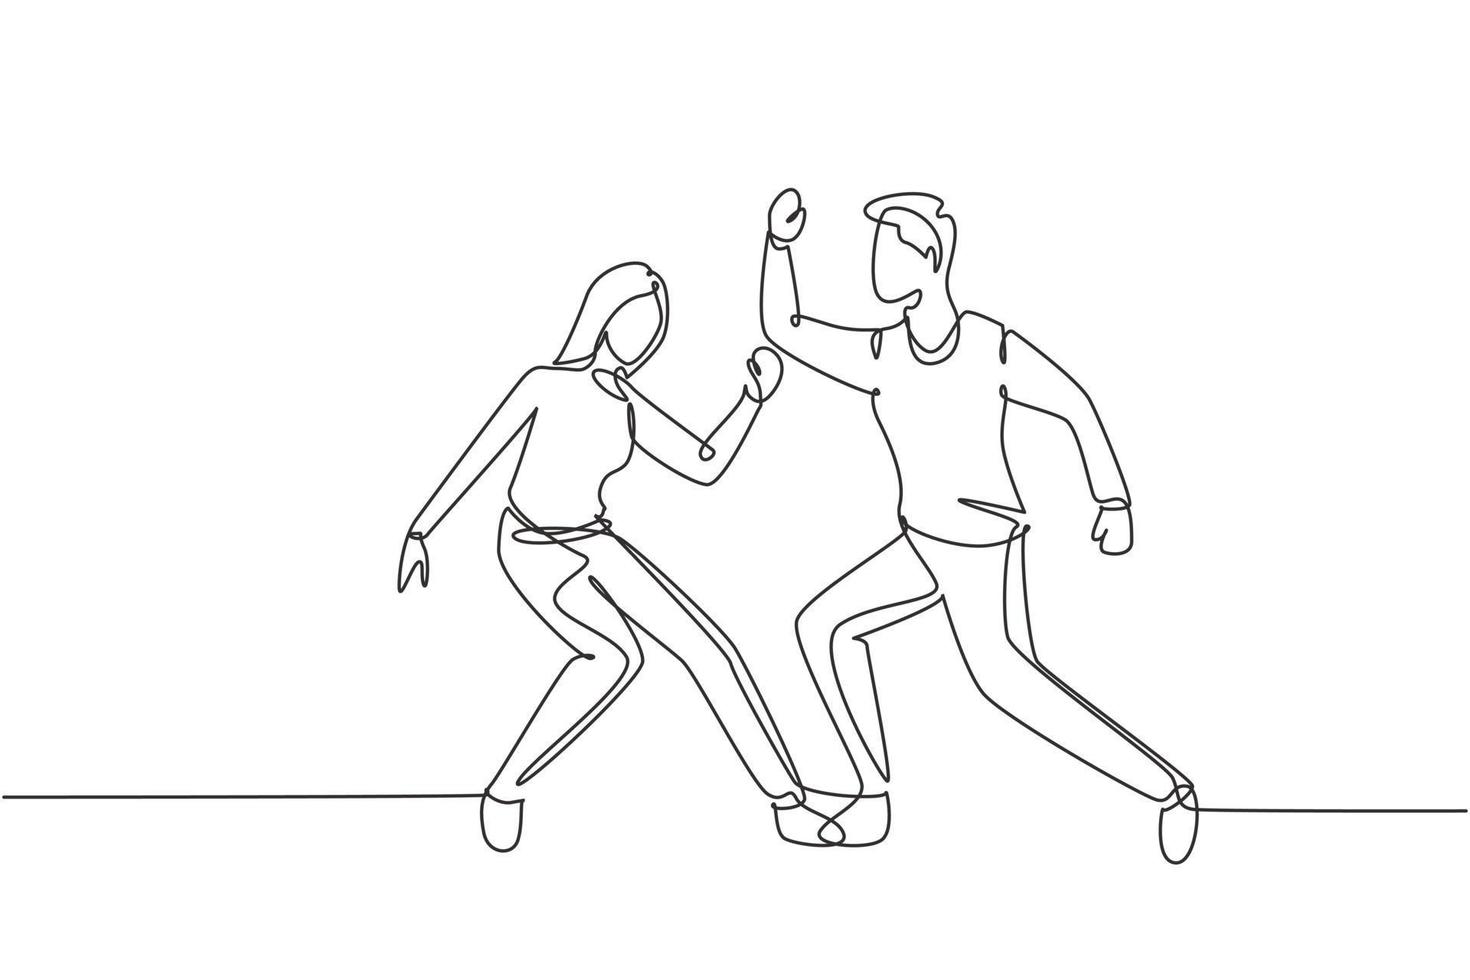 disegno continuo di un uomo e una donna che ballano lindy hop o swing. personaggi maschili e femminili che eseguono danza a scuola o a una festa. stile di vita divertente. illustrazione grafica vettoriale di disegno di disegno a linea singola